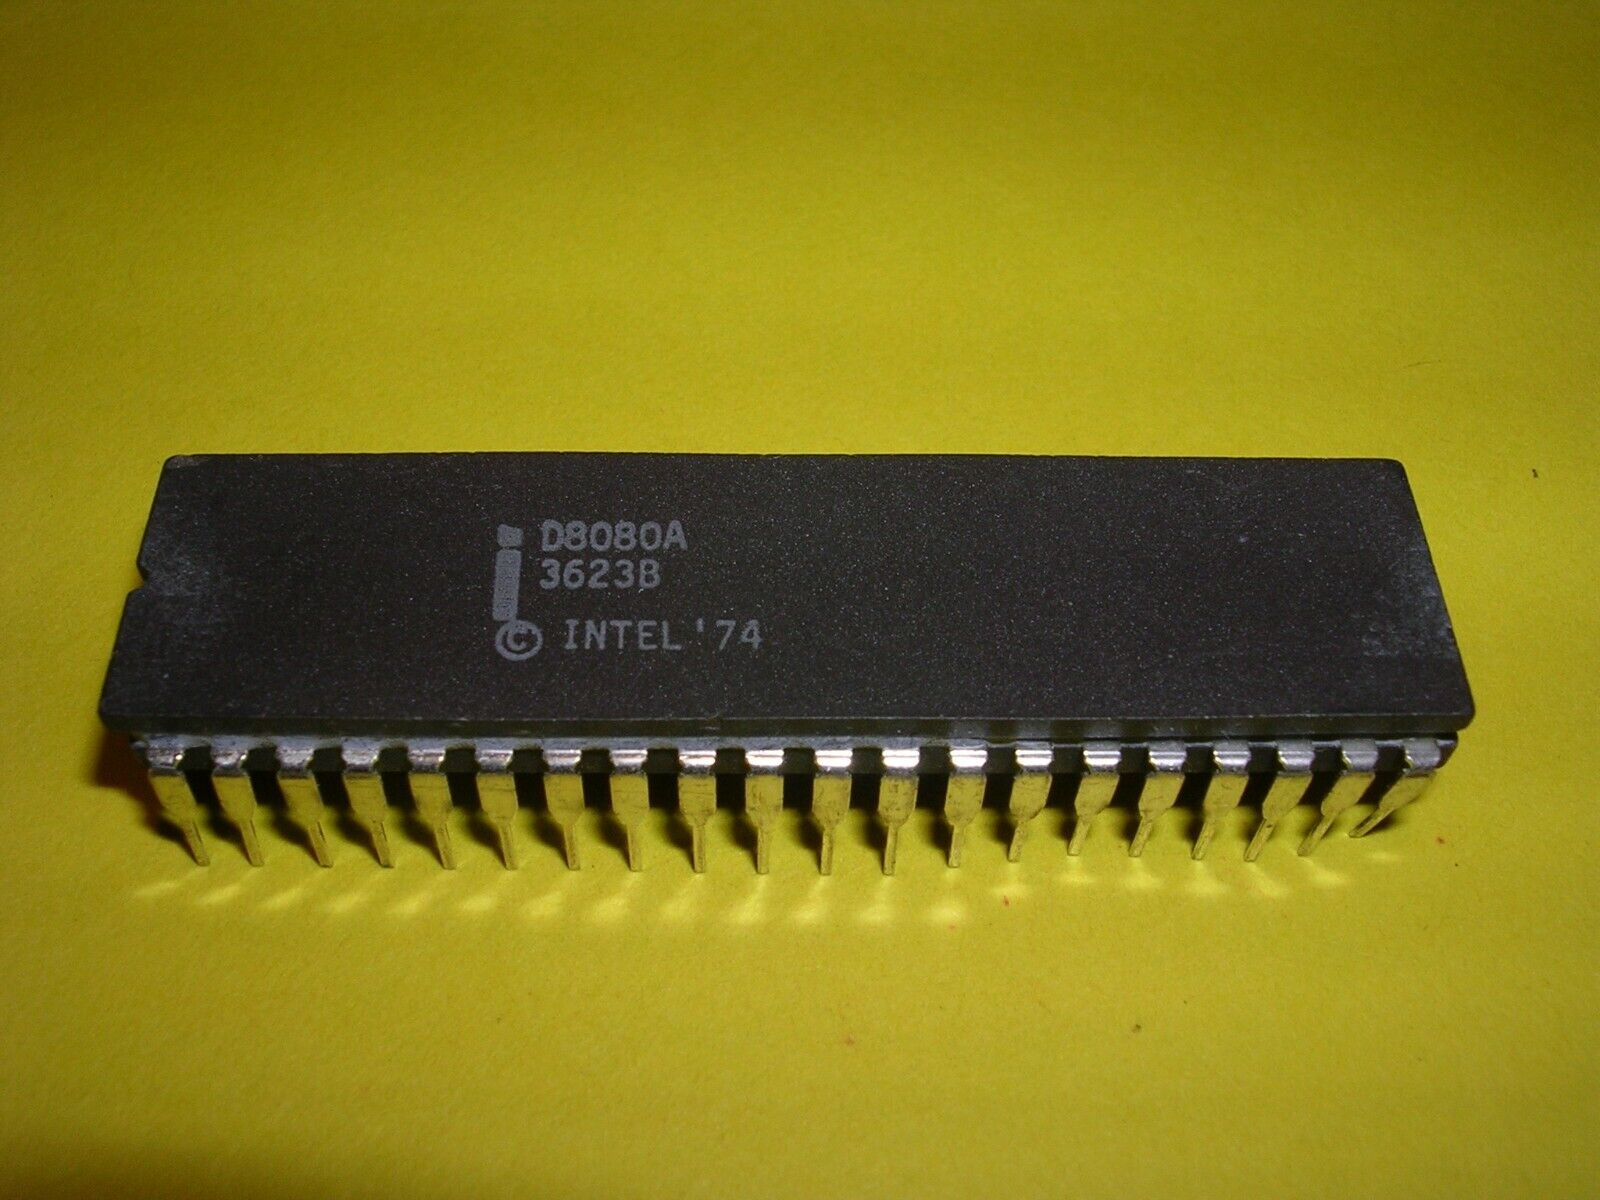 Intel D8080A Microprocessor / CPU in Gray Ceramic